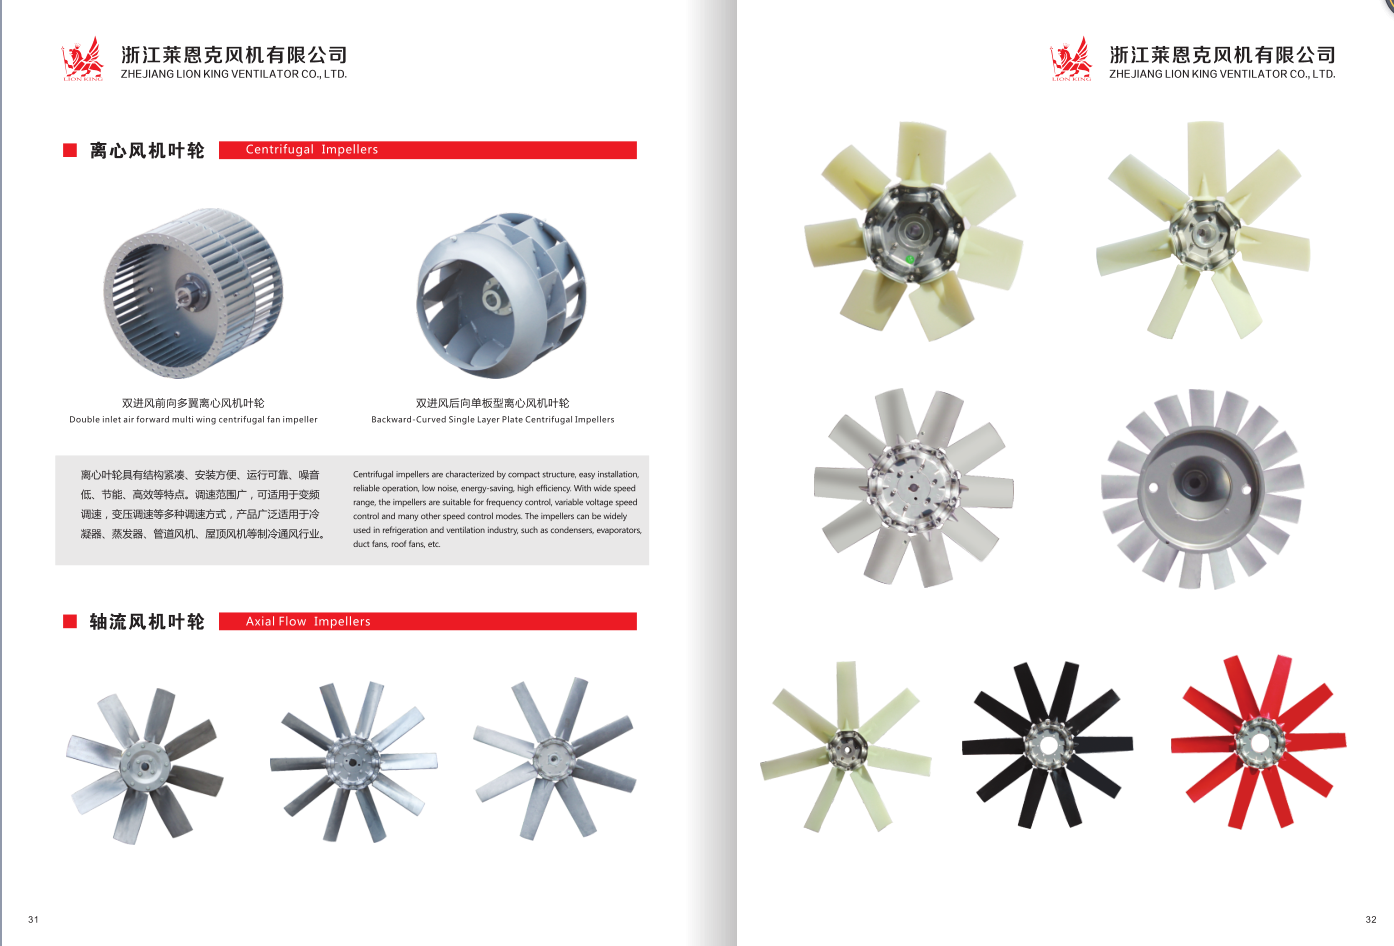 axial fan aluminium alloy axial blade impeller